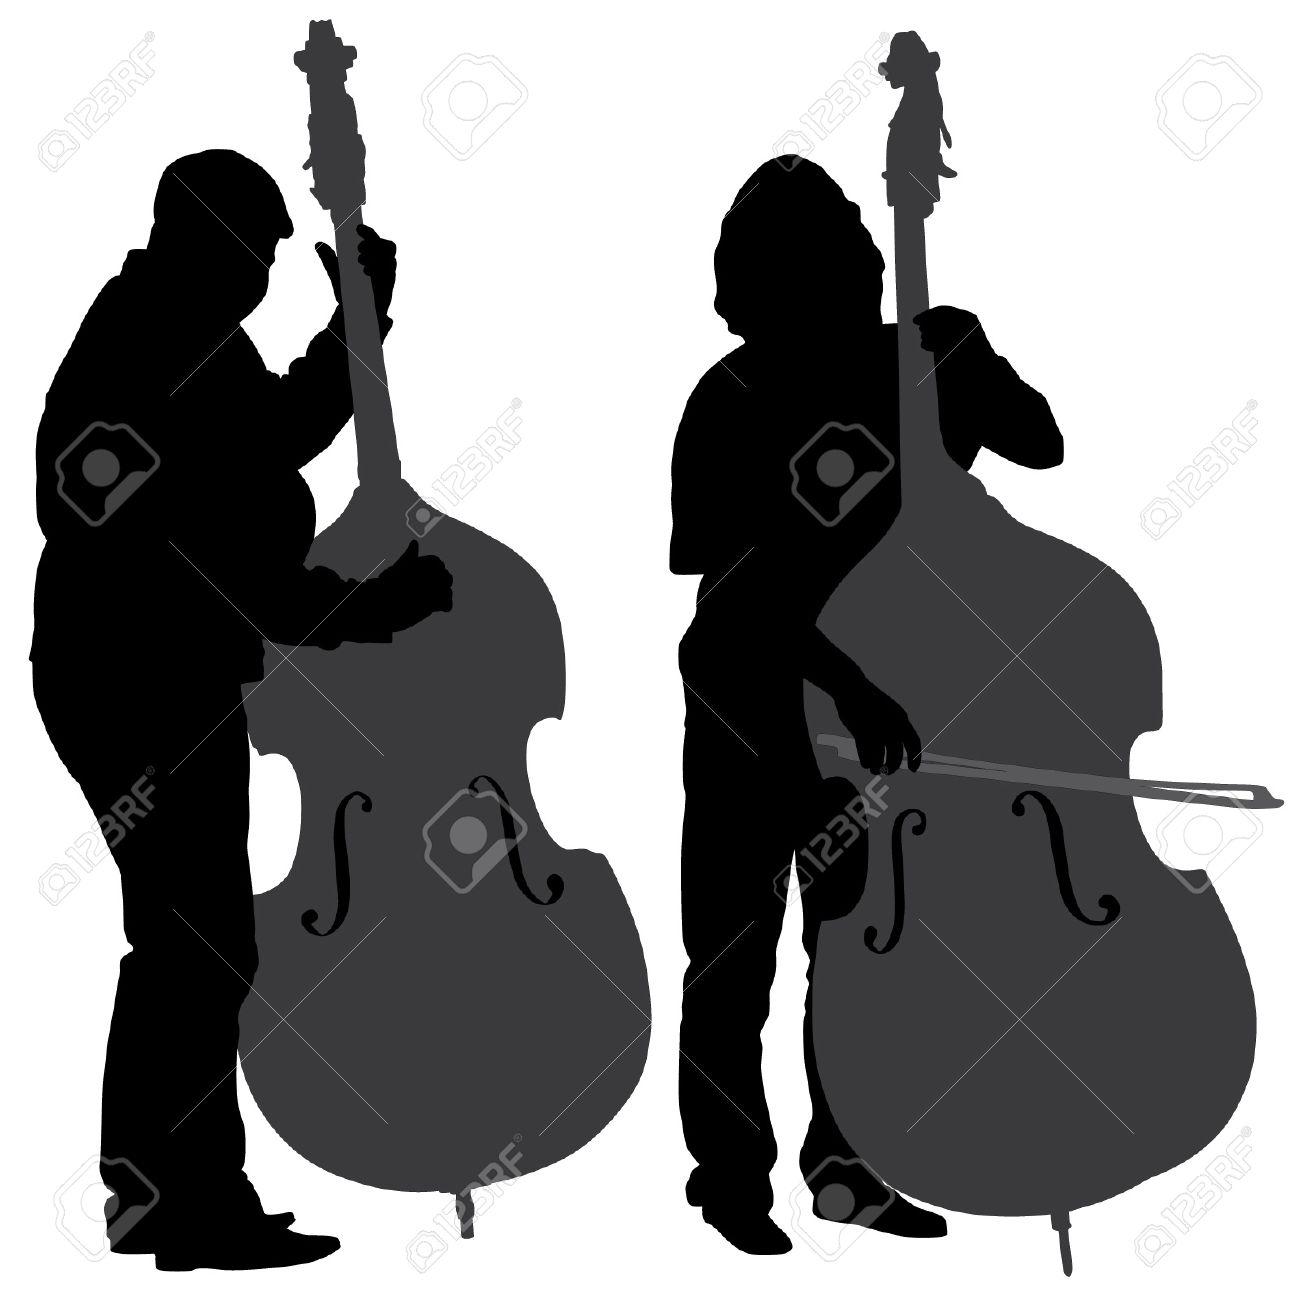 Cello clipart silhouette. Violin clip art at